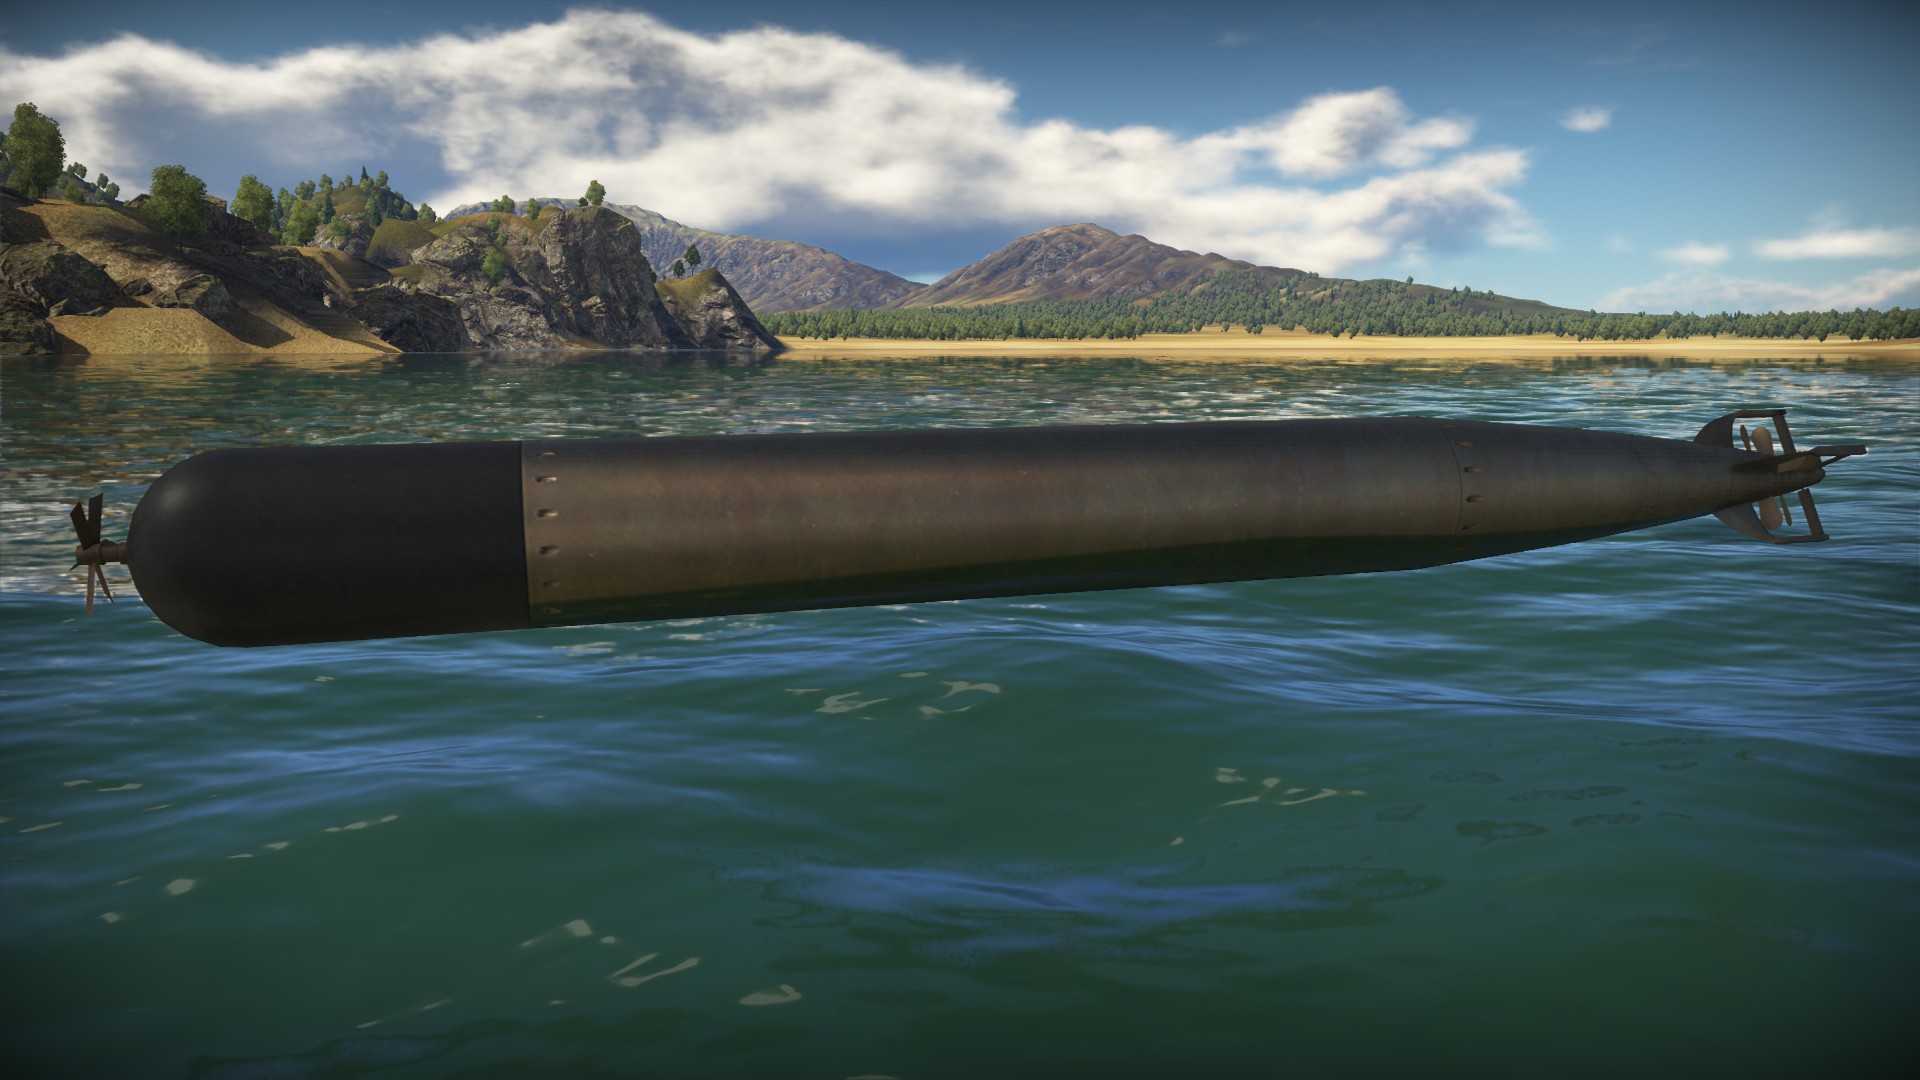 Большая торпеда. Mark 48 торпеда. Посейдон торпеда. Торпеда кит 65-76 калибра 650 мм. Mark 13 Torpedo.